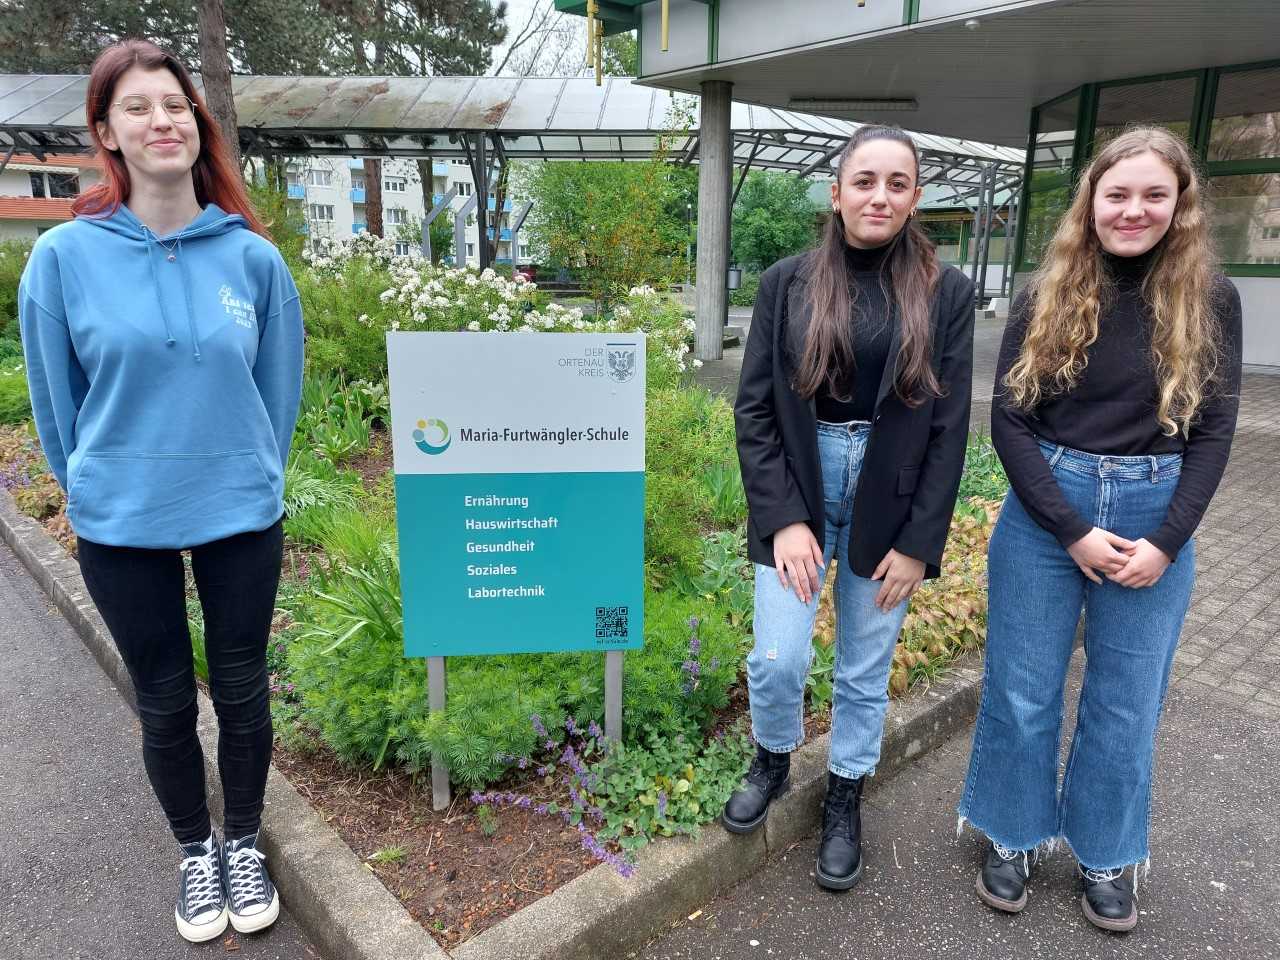 Die drei Schülerinnen aus dem Artikel vor dem Schild zur Maria-Furtwängler-Schule